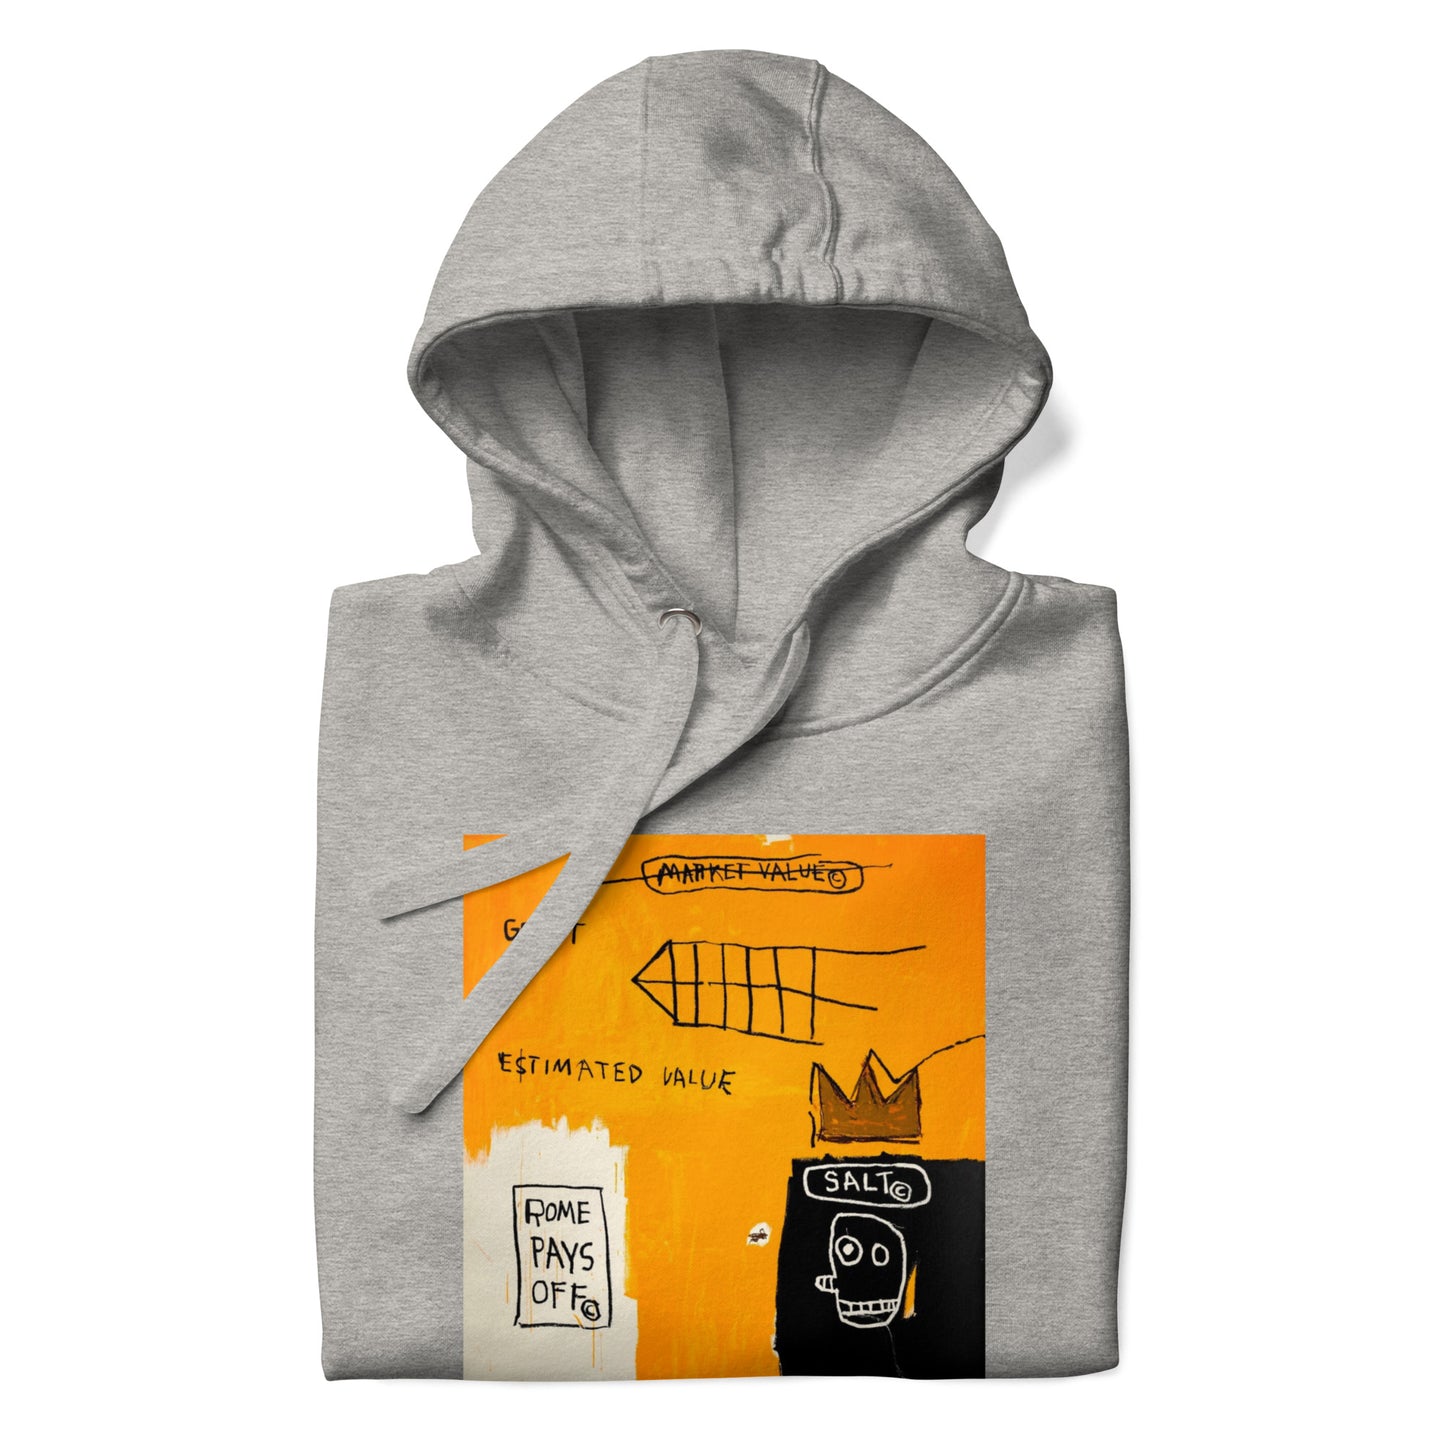 Jean-Michel Basquiat "Rome Pays Off" Artwork Printed Premium Streetwear Sweatshirt Hoodie Grey